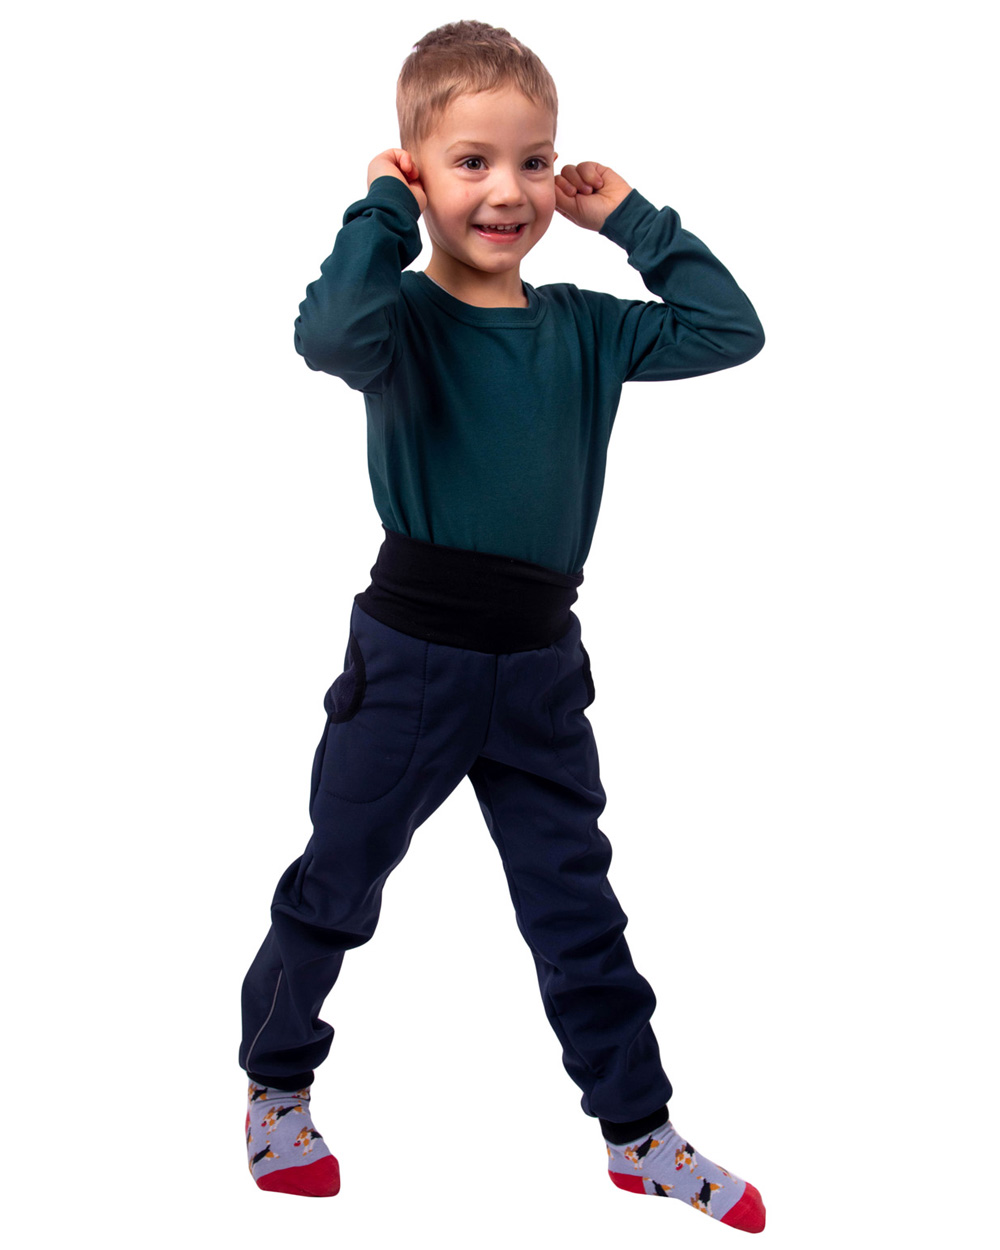 Detské softshellové nohavice s reguláciou pása, tmavo modré